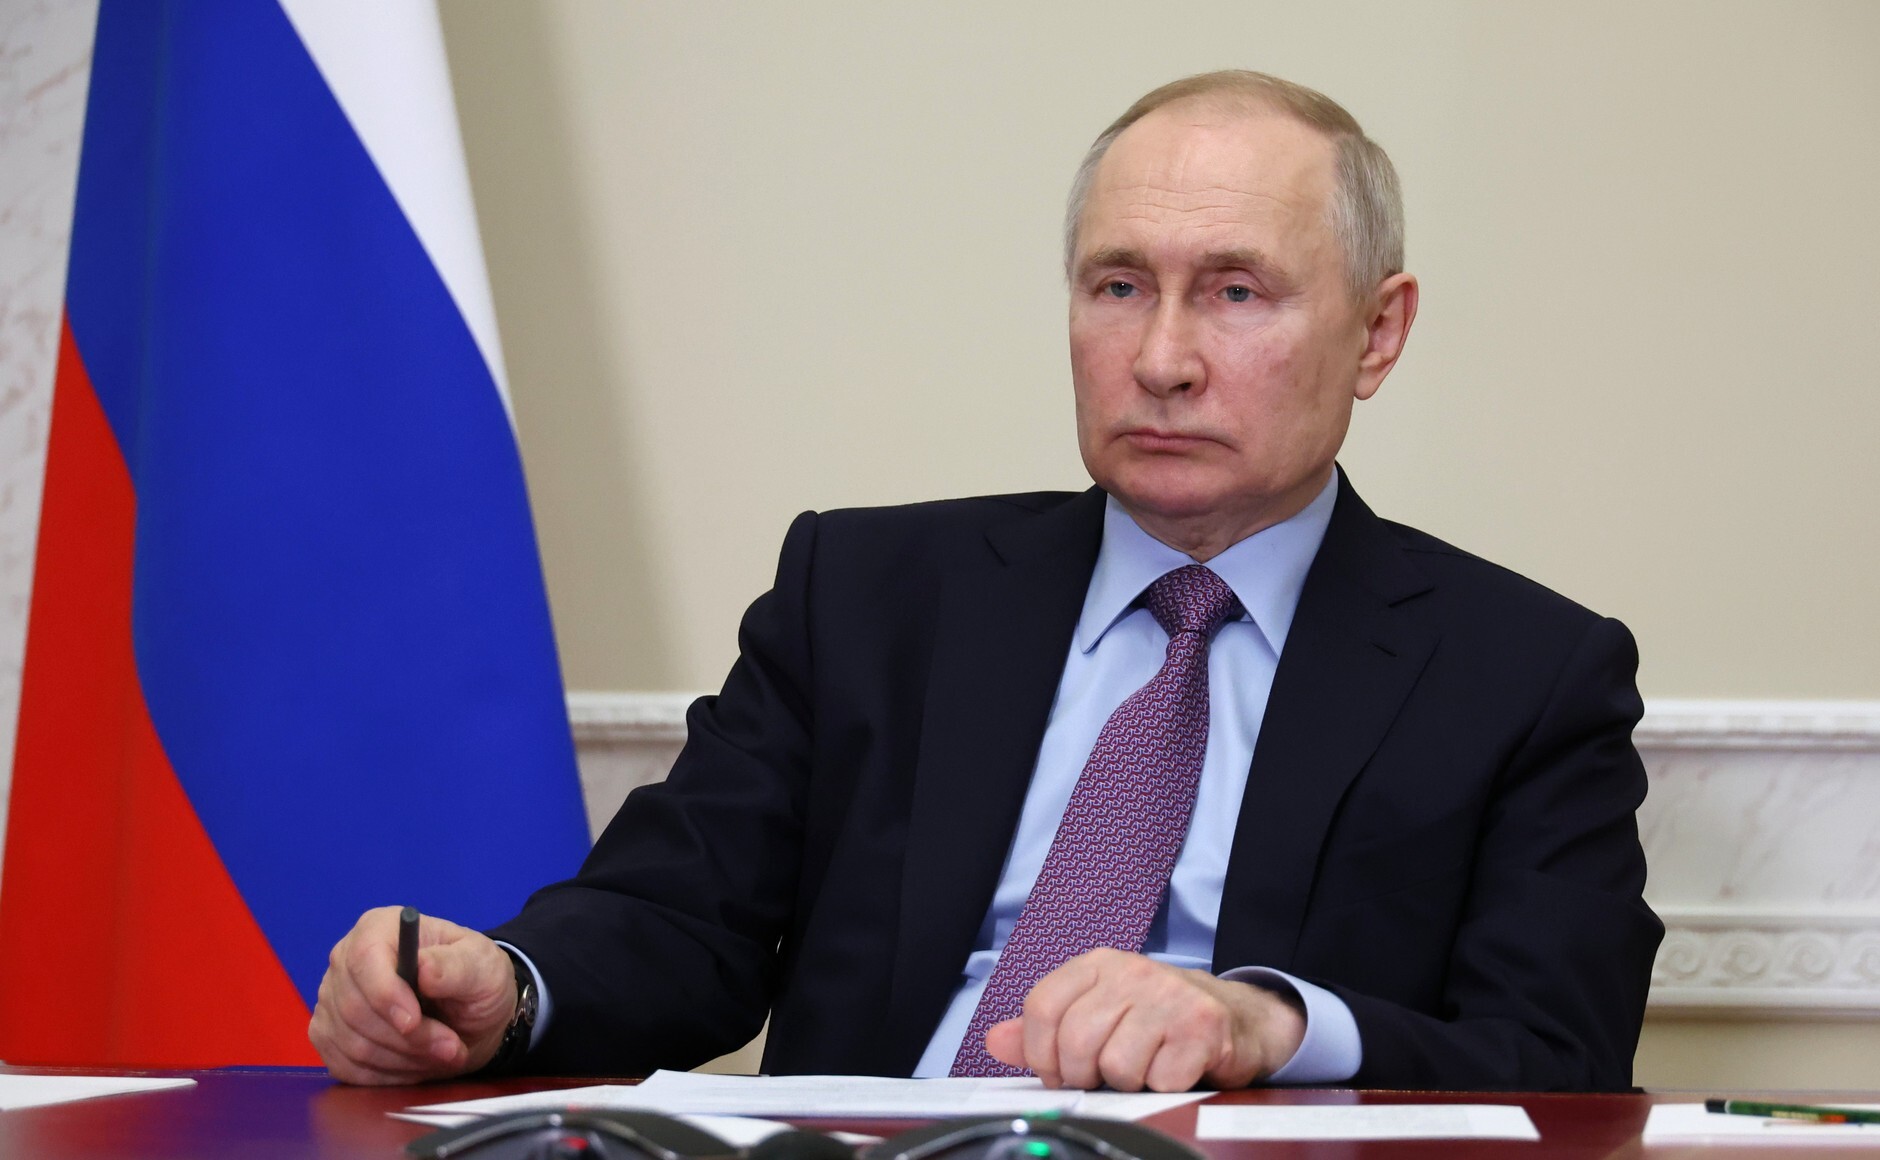 Путин: спецоперацию не начали в 2014 году, потому что хотели решить вопрос Донбасса мирно